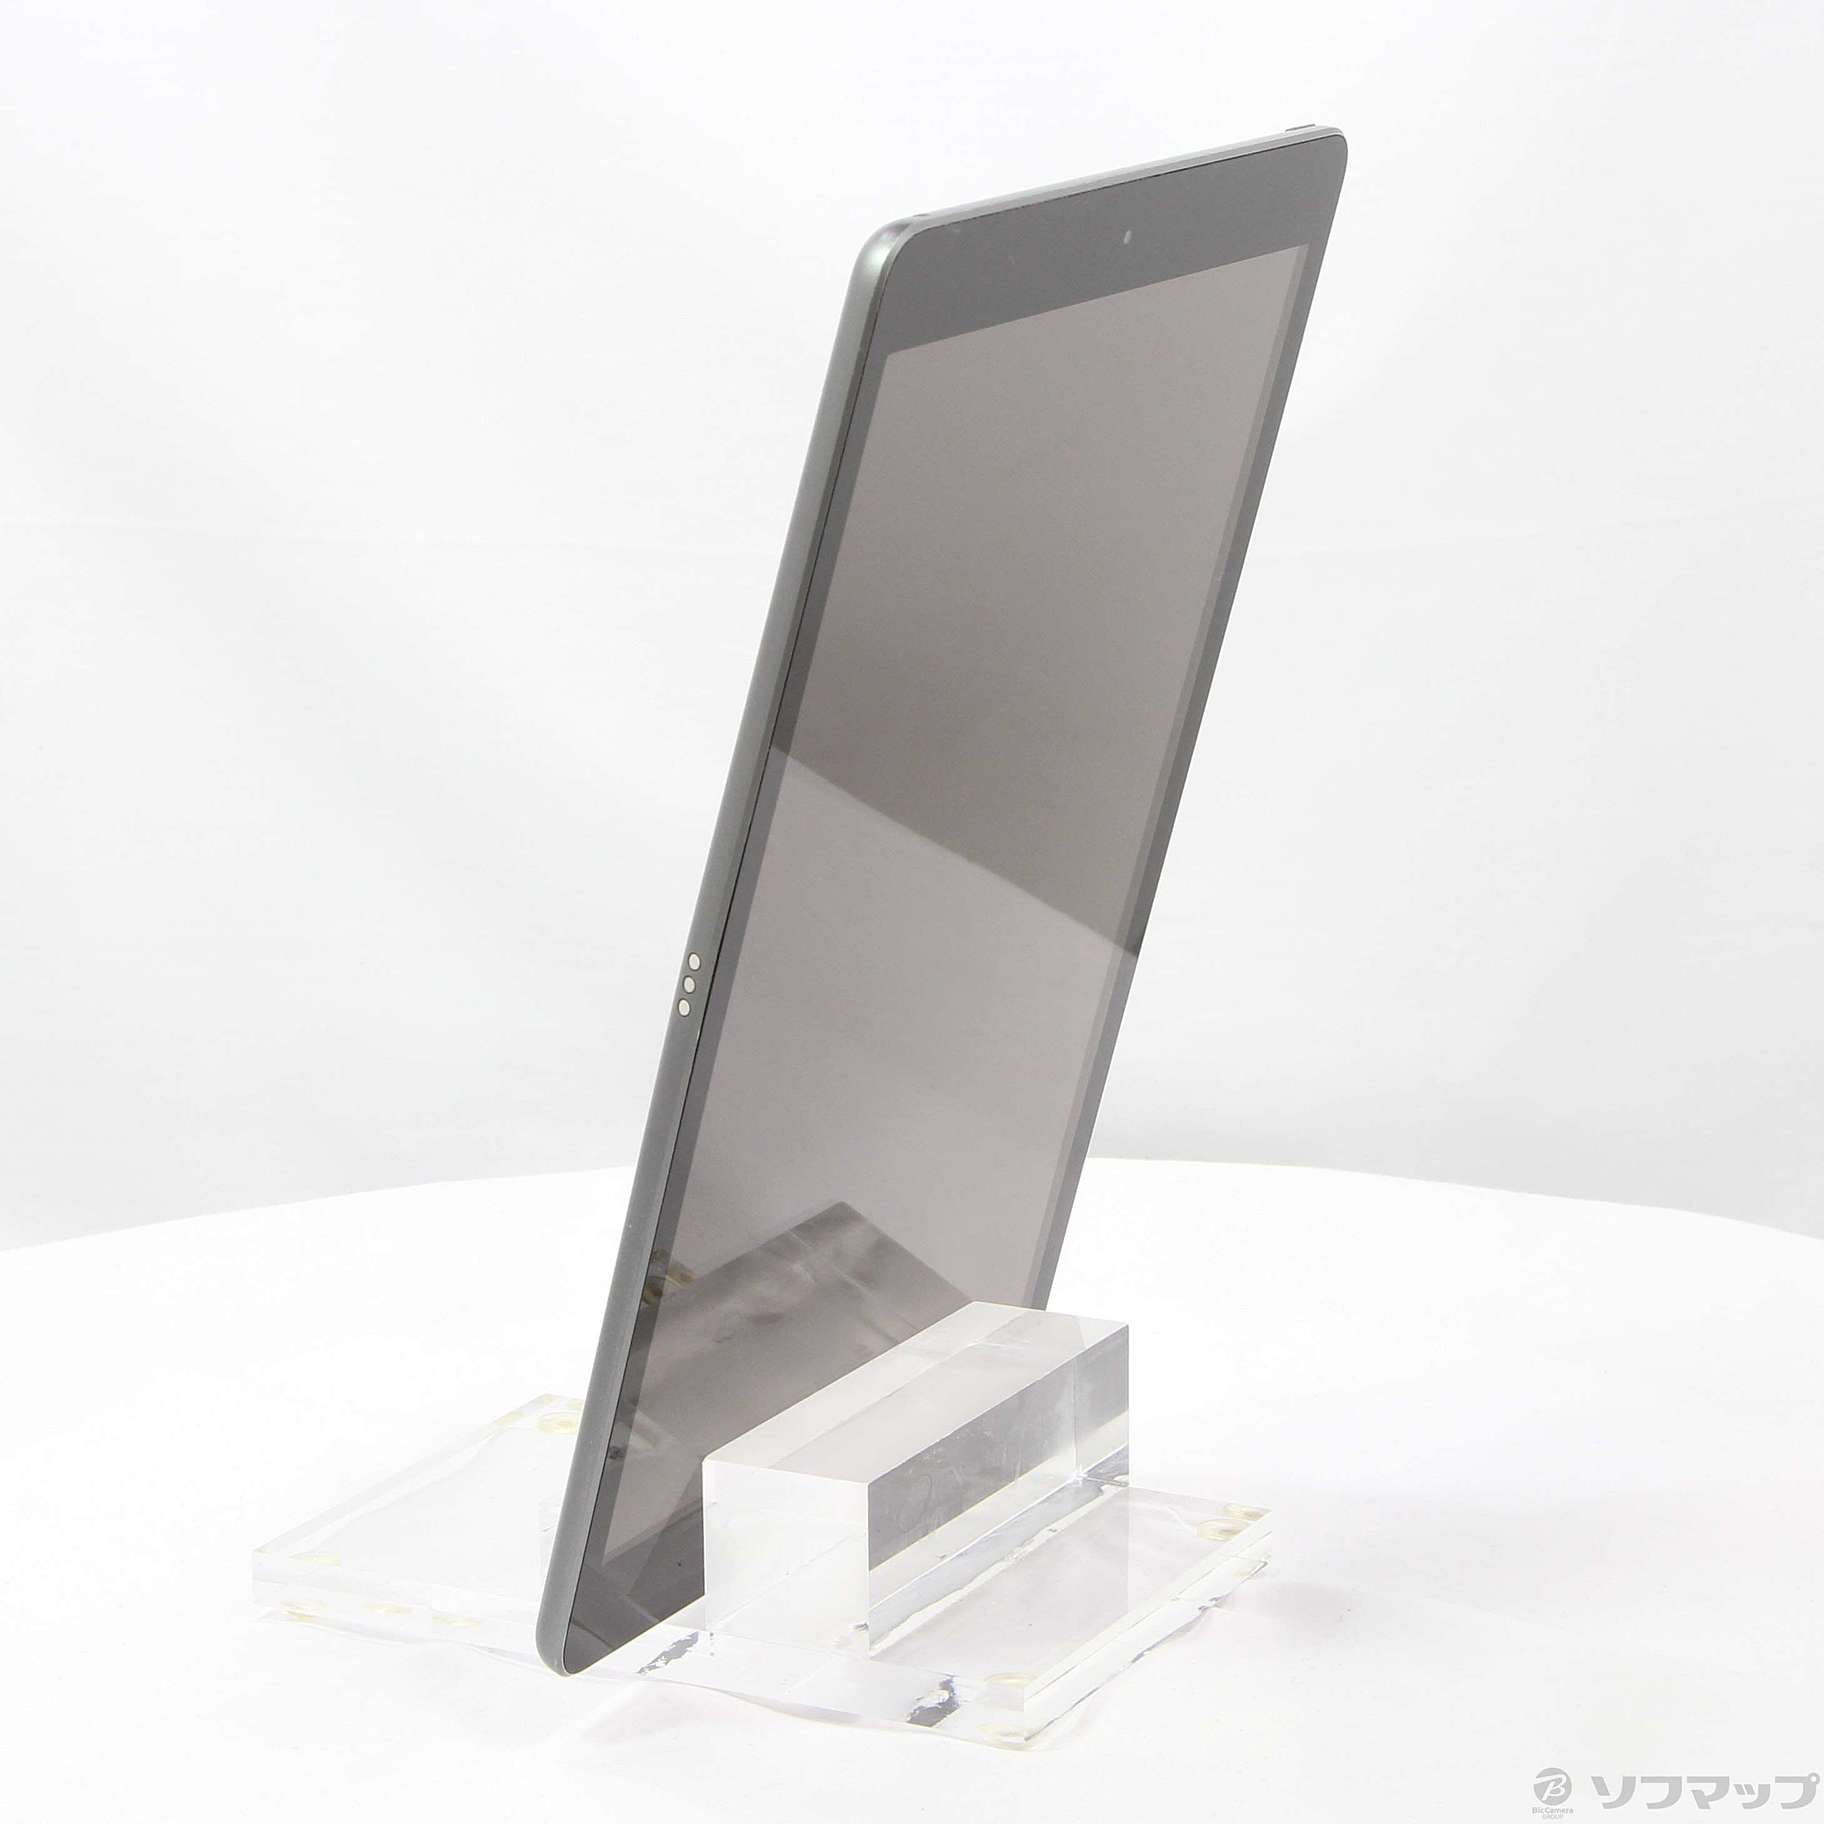 iPad 第7世代 32GB スペースグレイ MW742J／A Wi-Fi